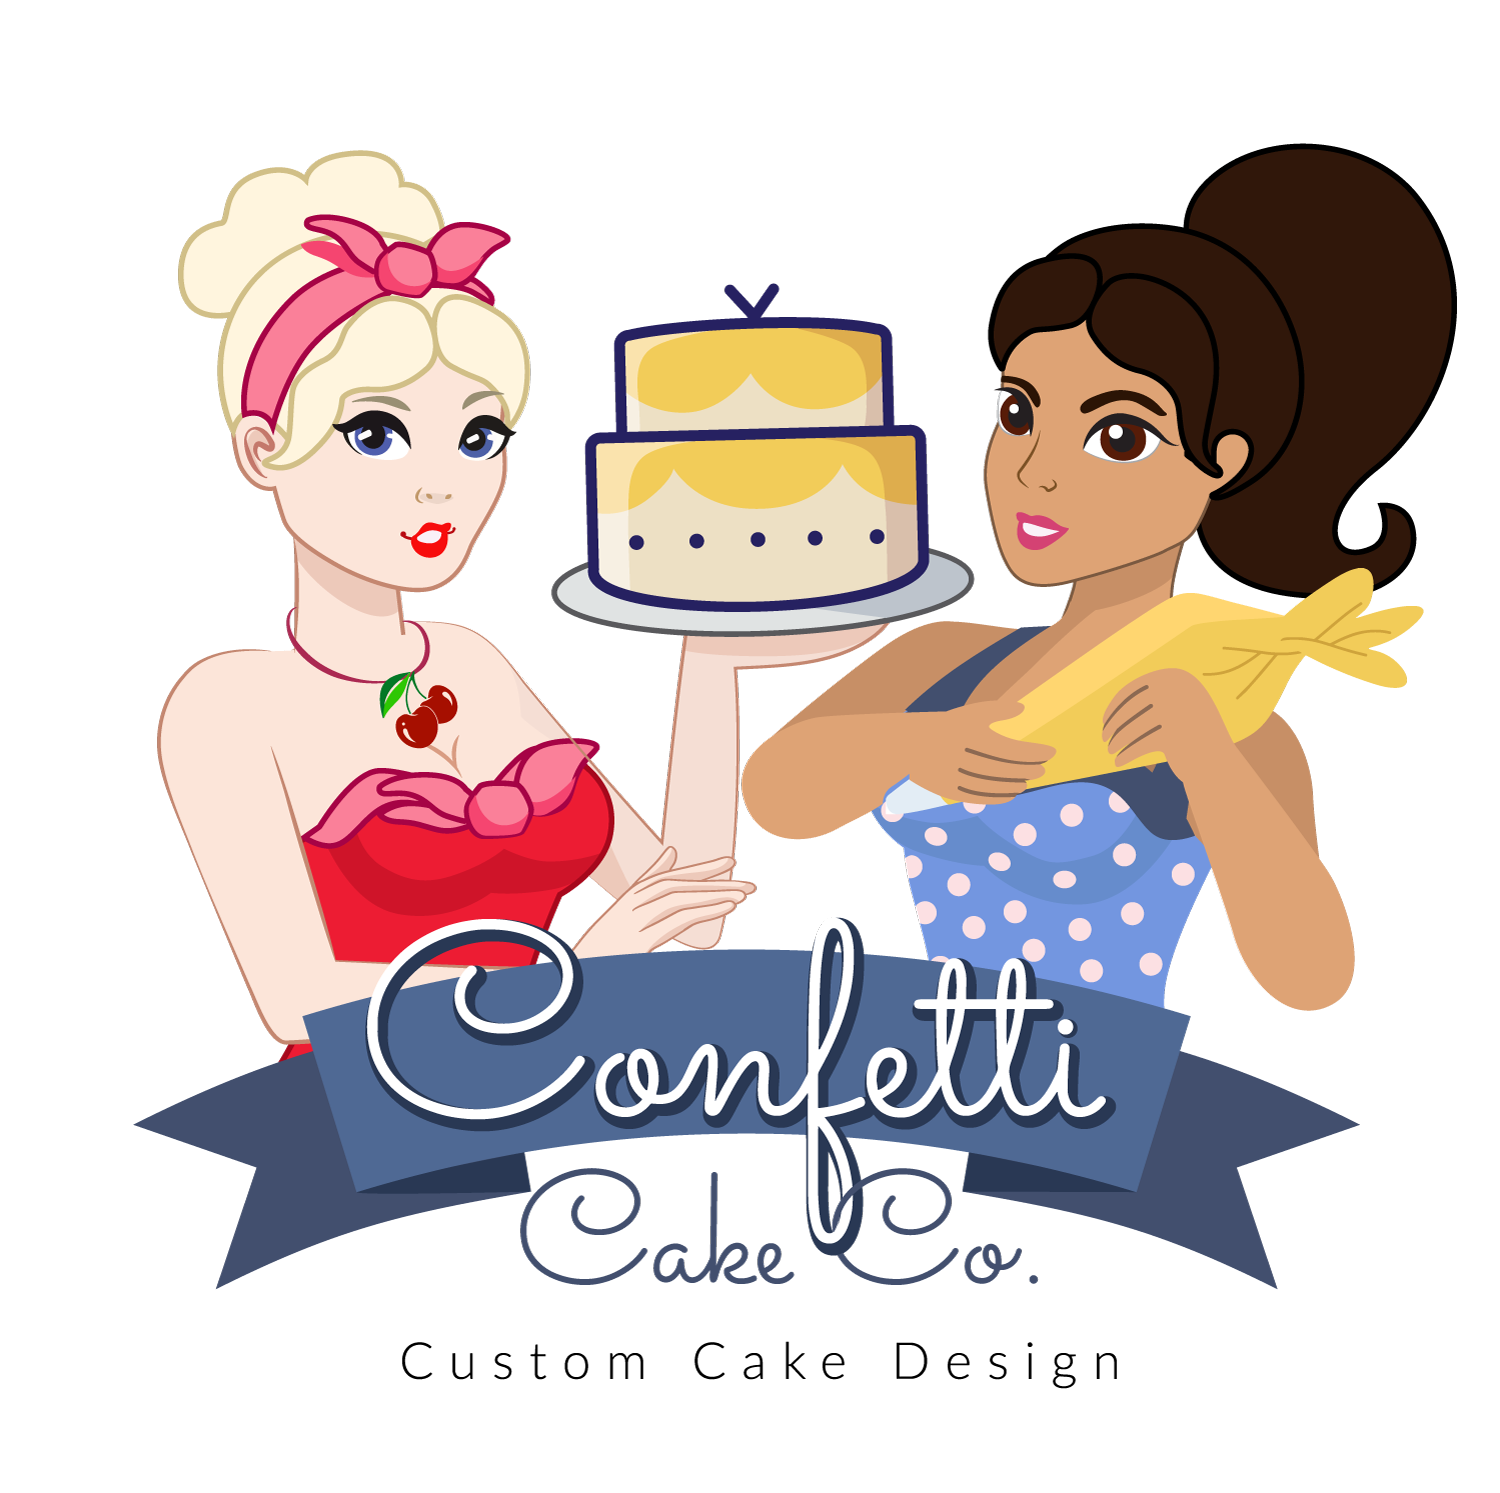 Confetti Cake Co.